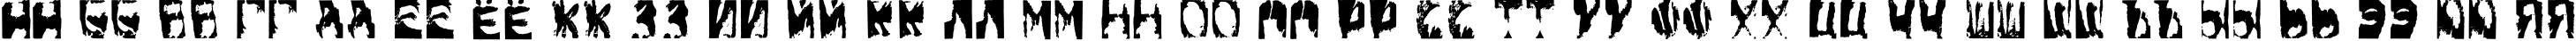 Пример написания русского алфавита шрифтом Gulitov Positive